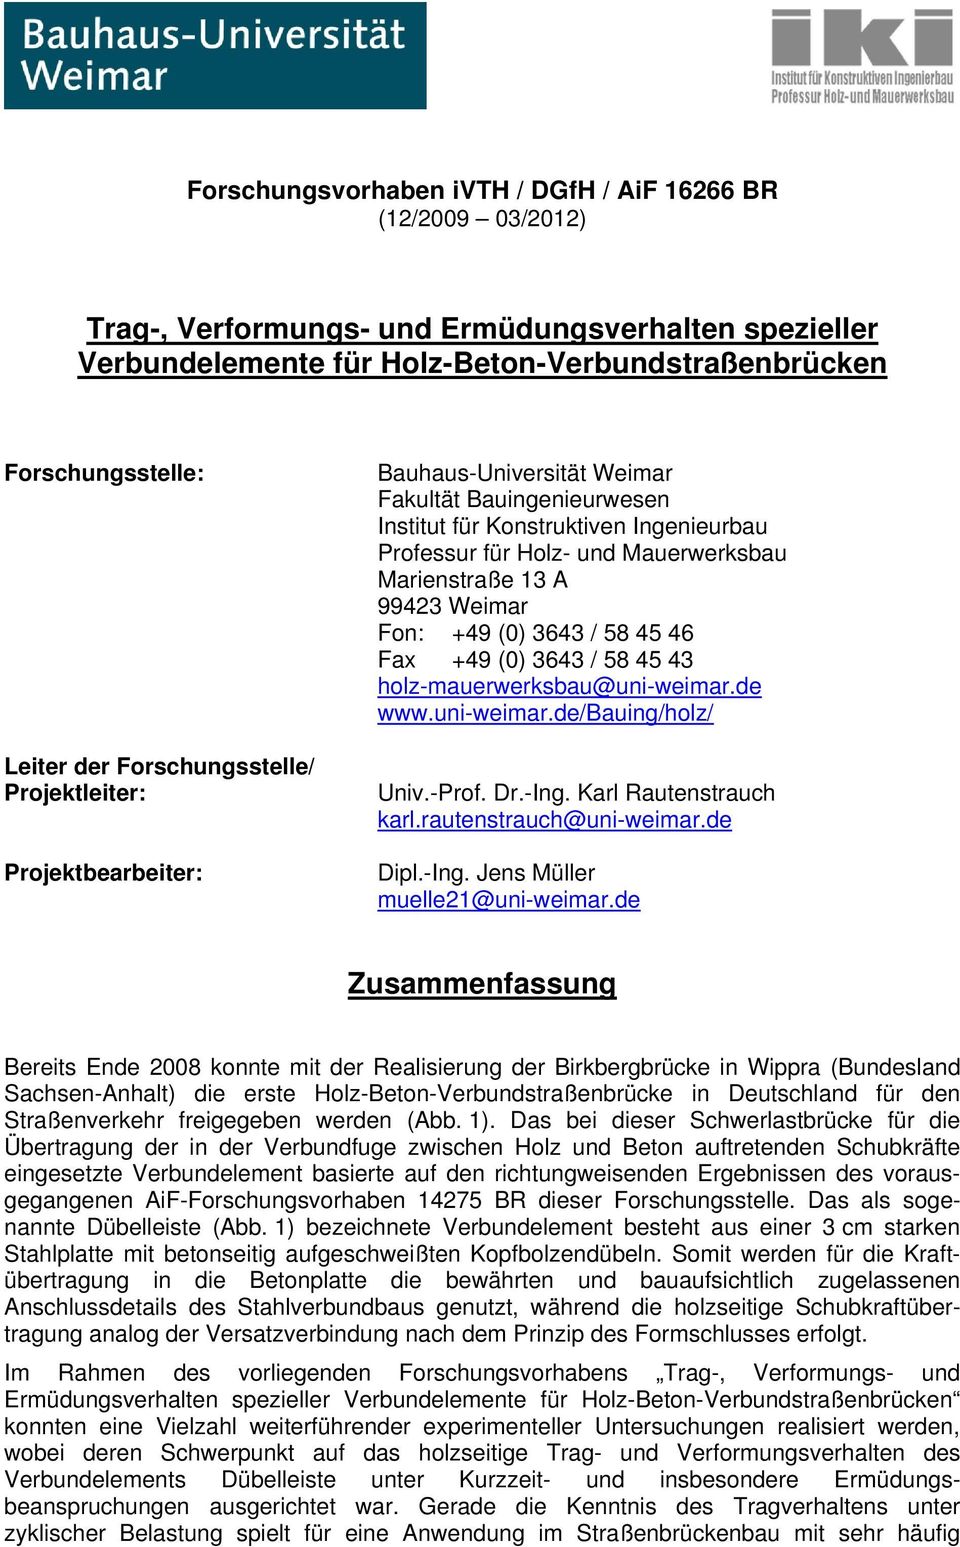 A 99423 Weimar Fon: +49 (0) 3643 / 58 45 46 Fax +49 (0) 3643 / 58 45 43 holz-mauerwerksbau@uni-weimar.de www.uni-weimar.de/bauing/holz/ Univ.-Prof. Dr.-Ing. Karl Rautenstrauch karl.